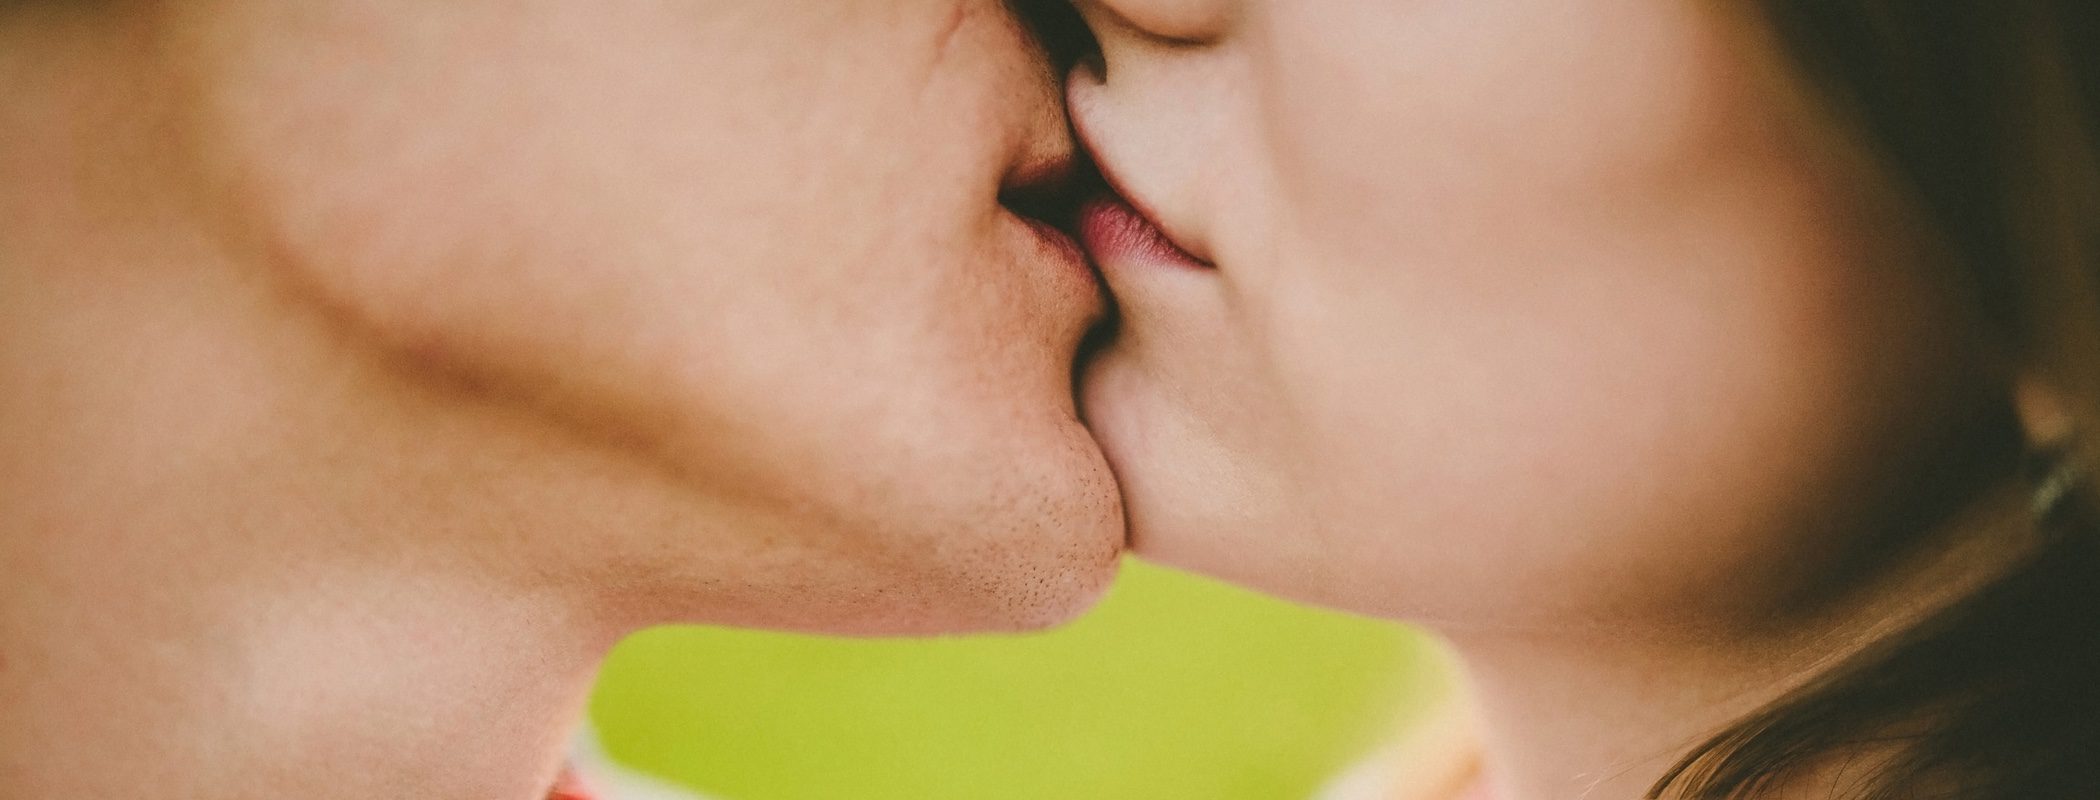 Los besos nos ayudan a encontrar la pareja perfecta